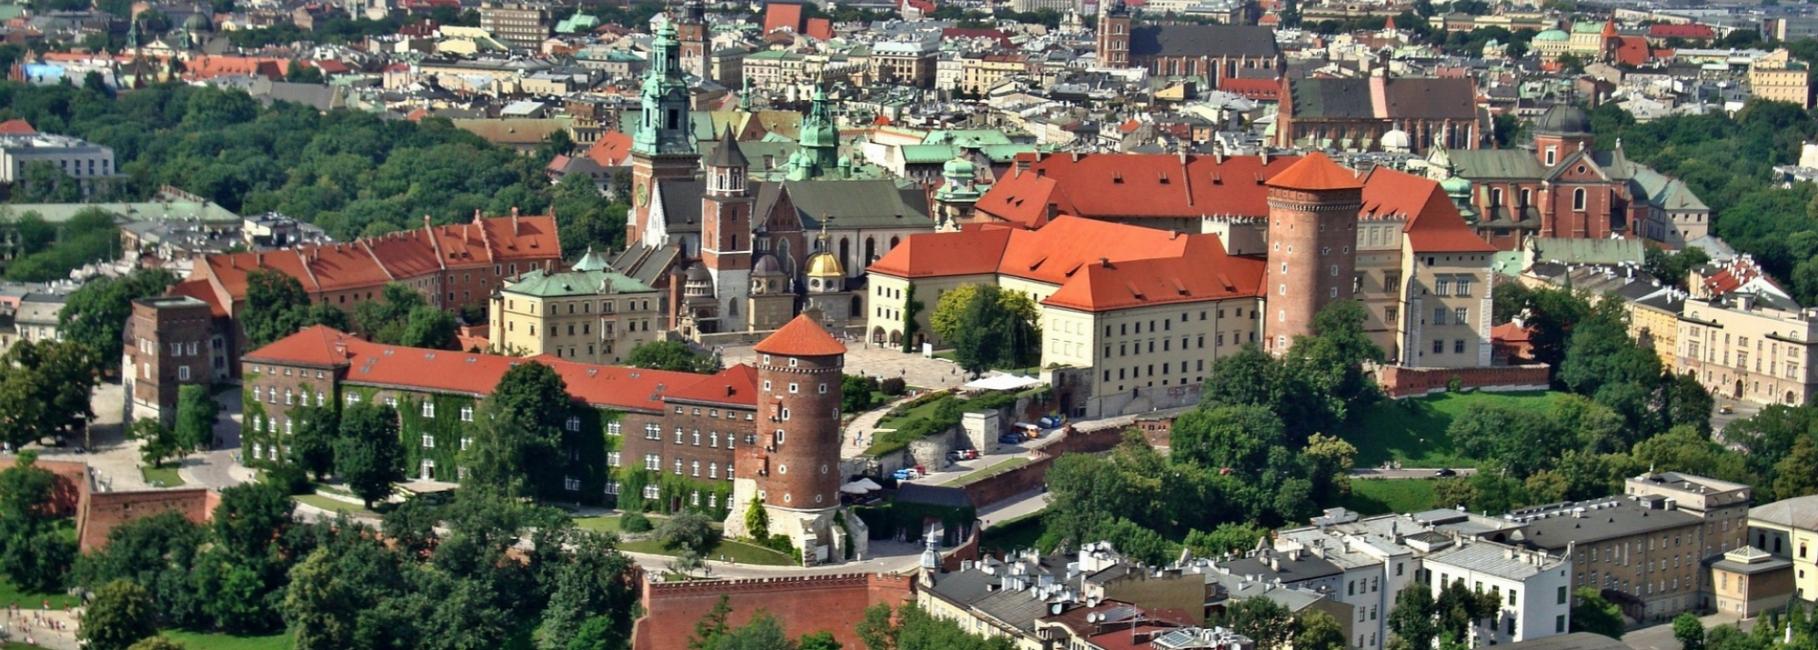 krakow public trip header slk fe